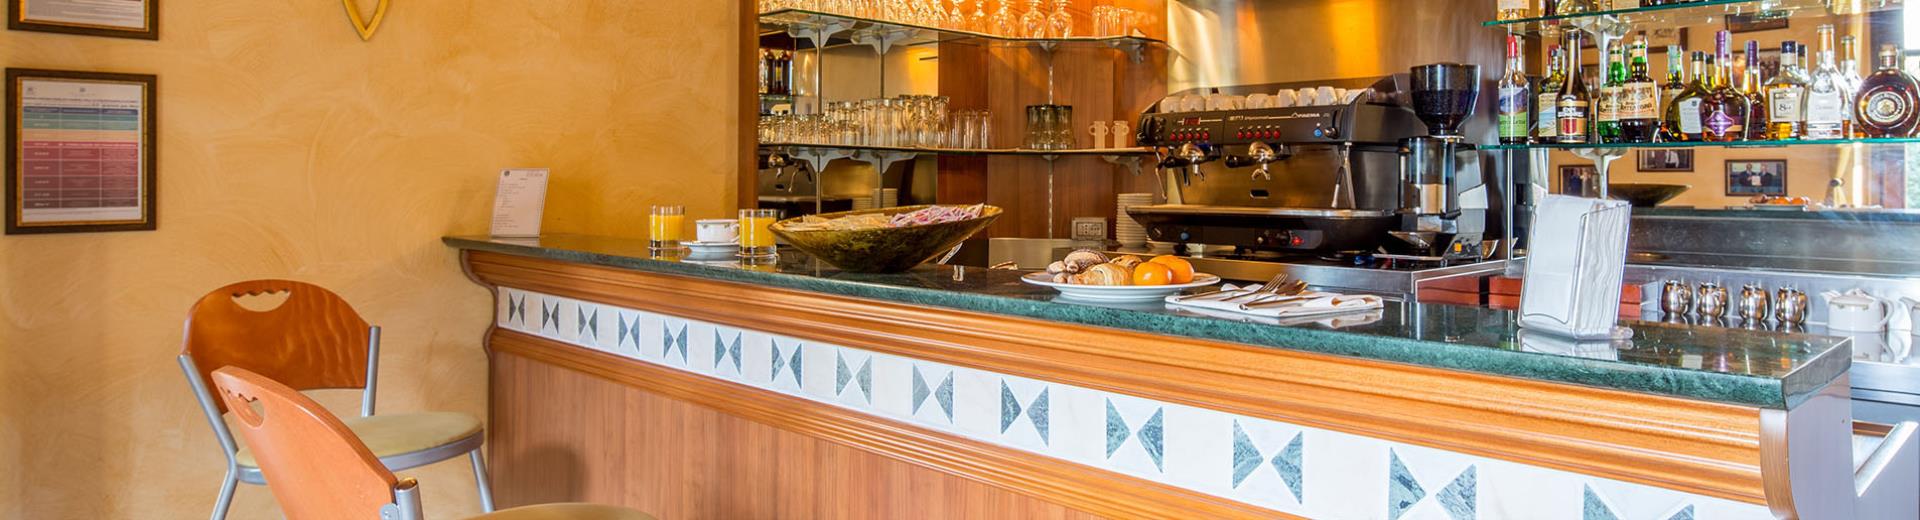 Il Lounge Bar del Best Western Plus Hotel le Rondini, vicino a Torino e all ''''''''aeroporto, è ideale per organizzare e personalizzare coffee break, pranzi aziendali e aperitivi